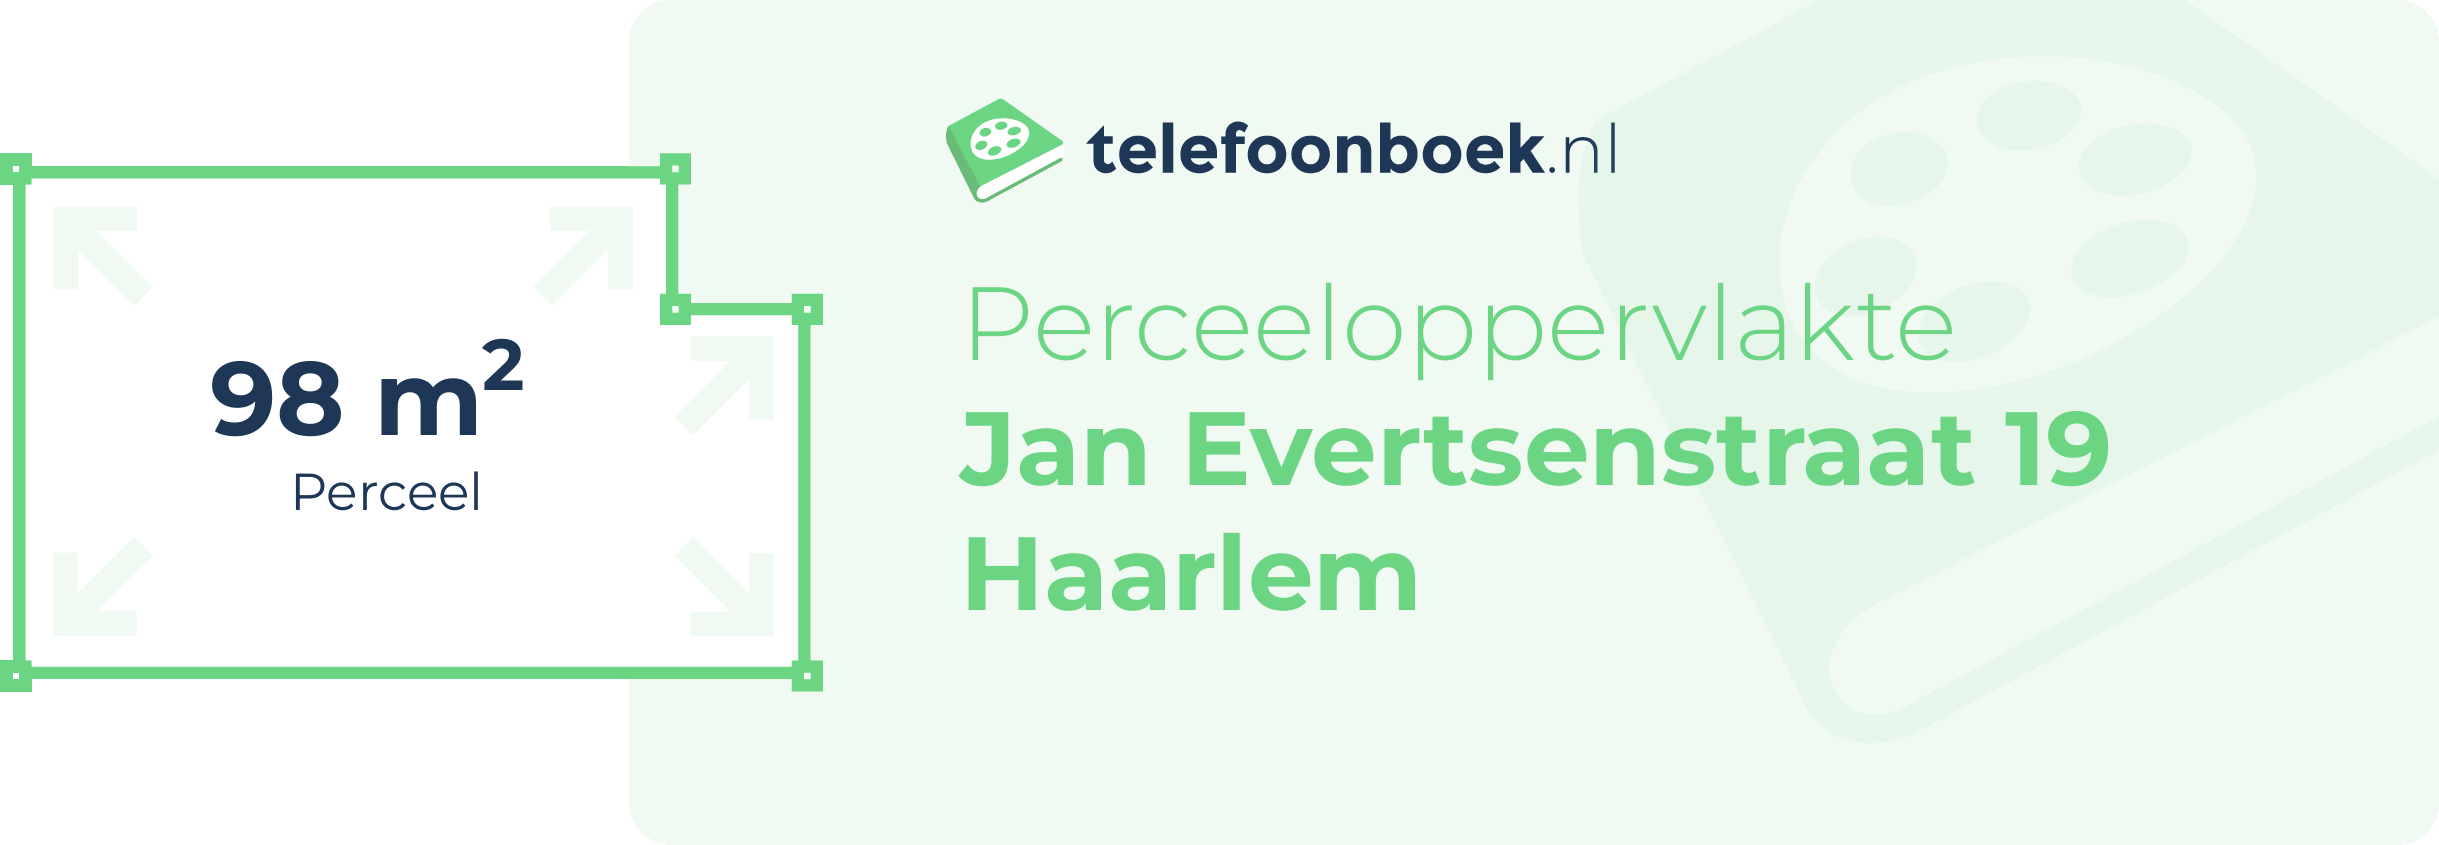 Perceeloppervlakte Jan Evertsenstraat 19 Haarlem